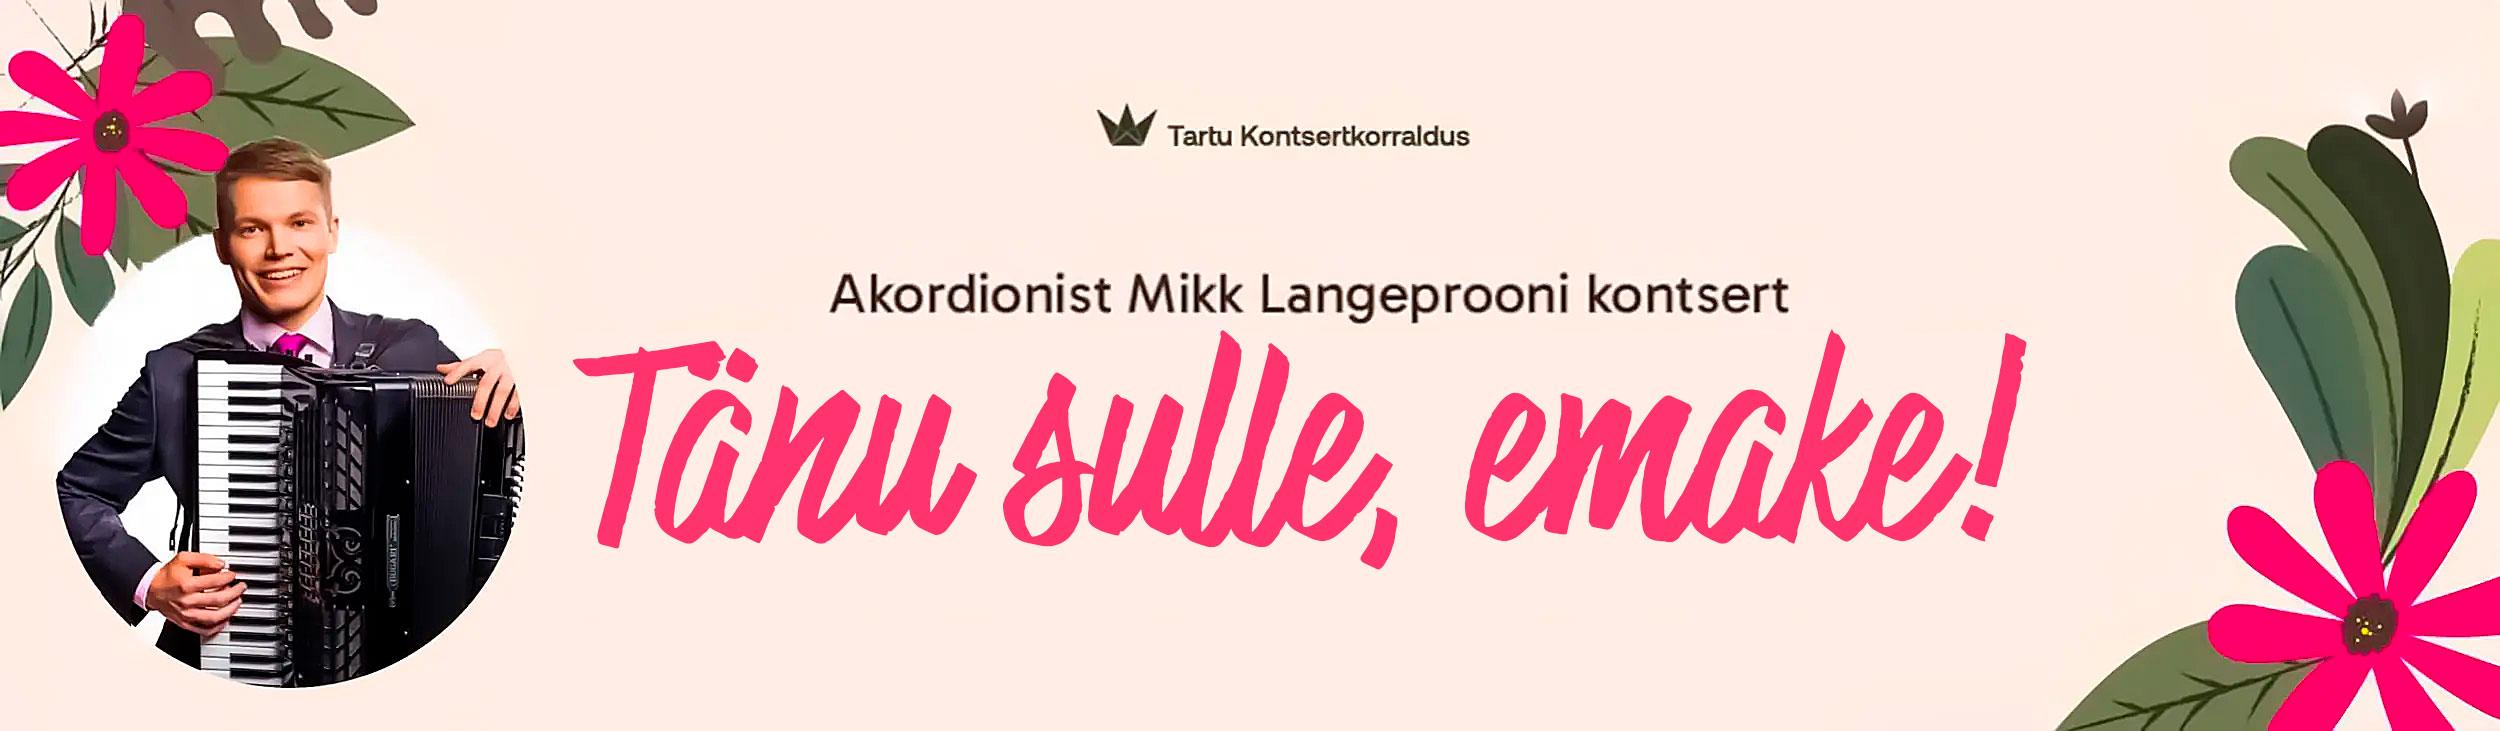 Akordionist Mikk Langeprooni emadepäevakontsert “Tänu sulle, emake!” 0